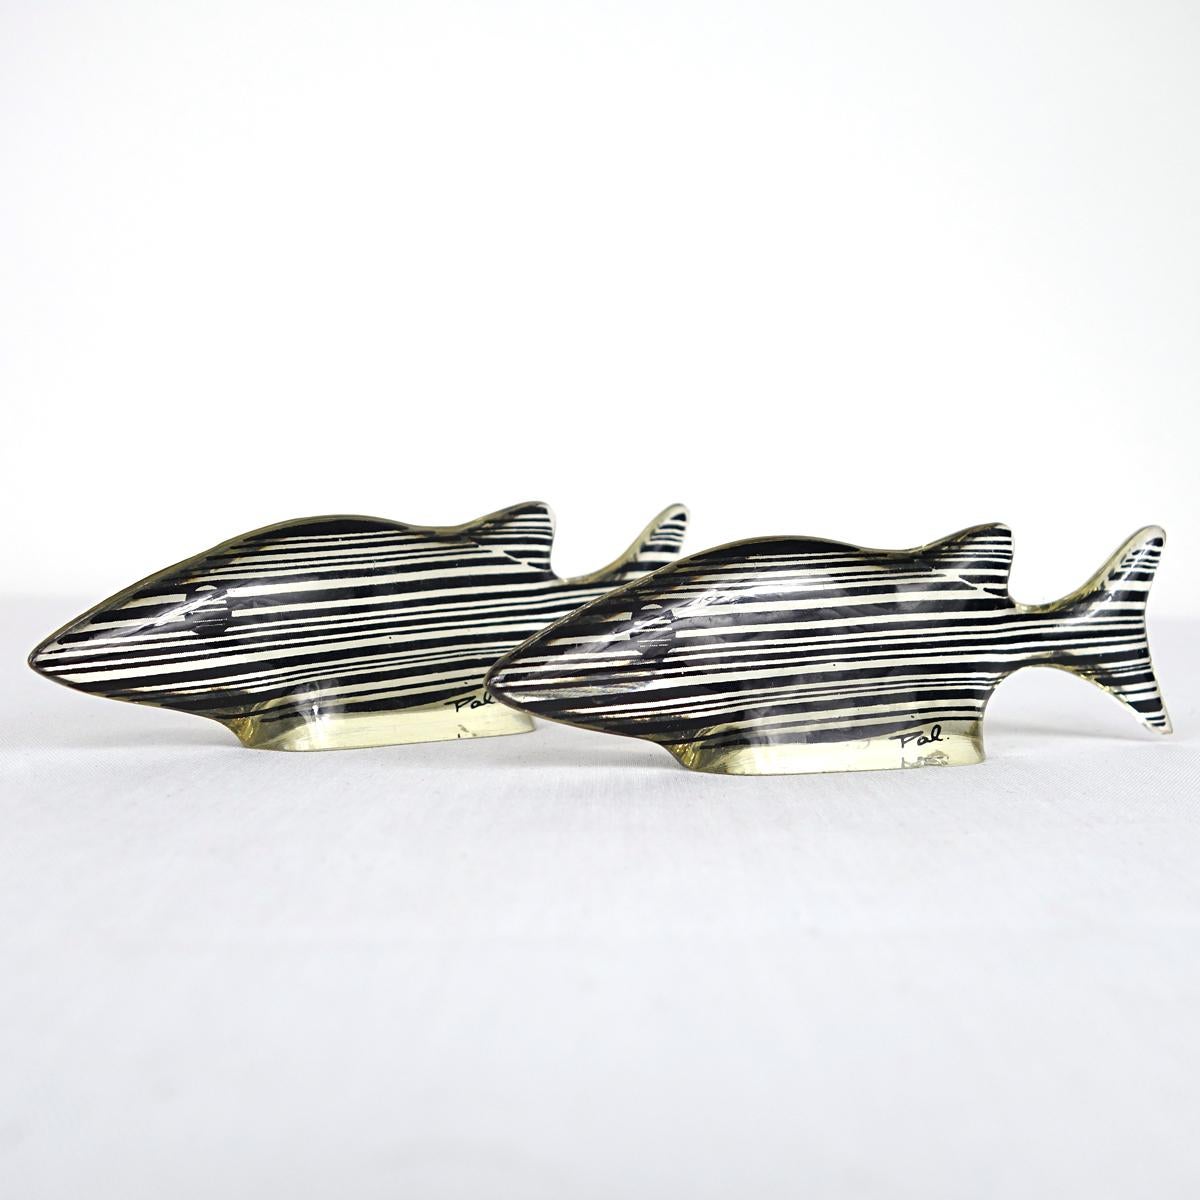 Ein Paar kleine schwarz-weiße Fische, entworfen und hergestellt von Abraham Palatnik. 

Der brasilianische Künstler Abraham Palatnik (1928 - 2020) war der Begründer der technologischen Bewegung in der brasilianischen Kunst und ein Pionier der